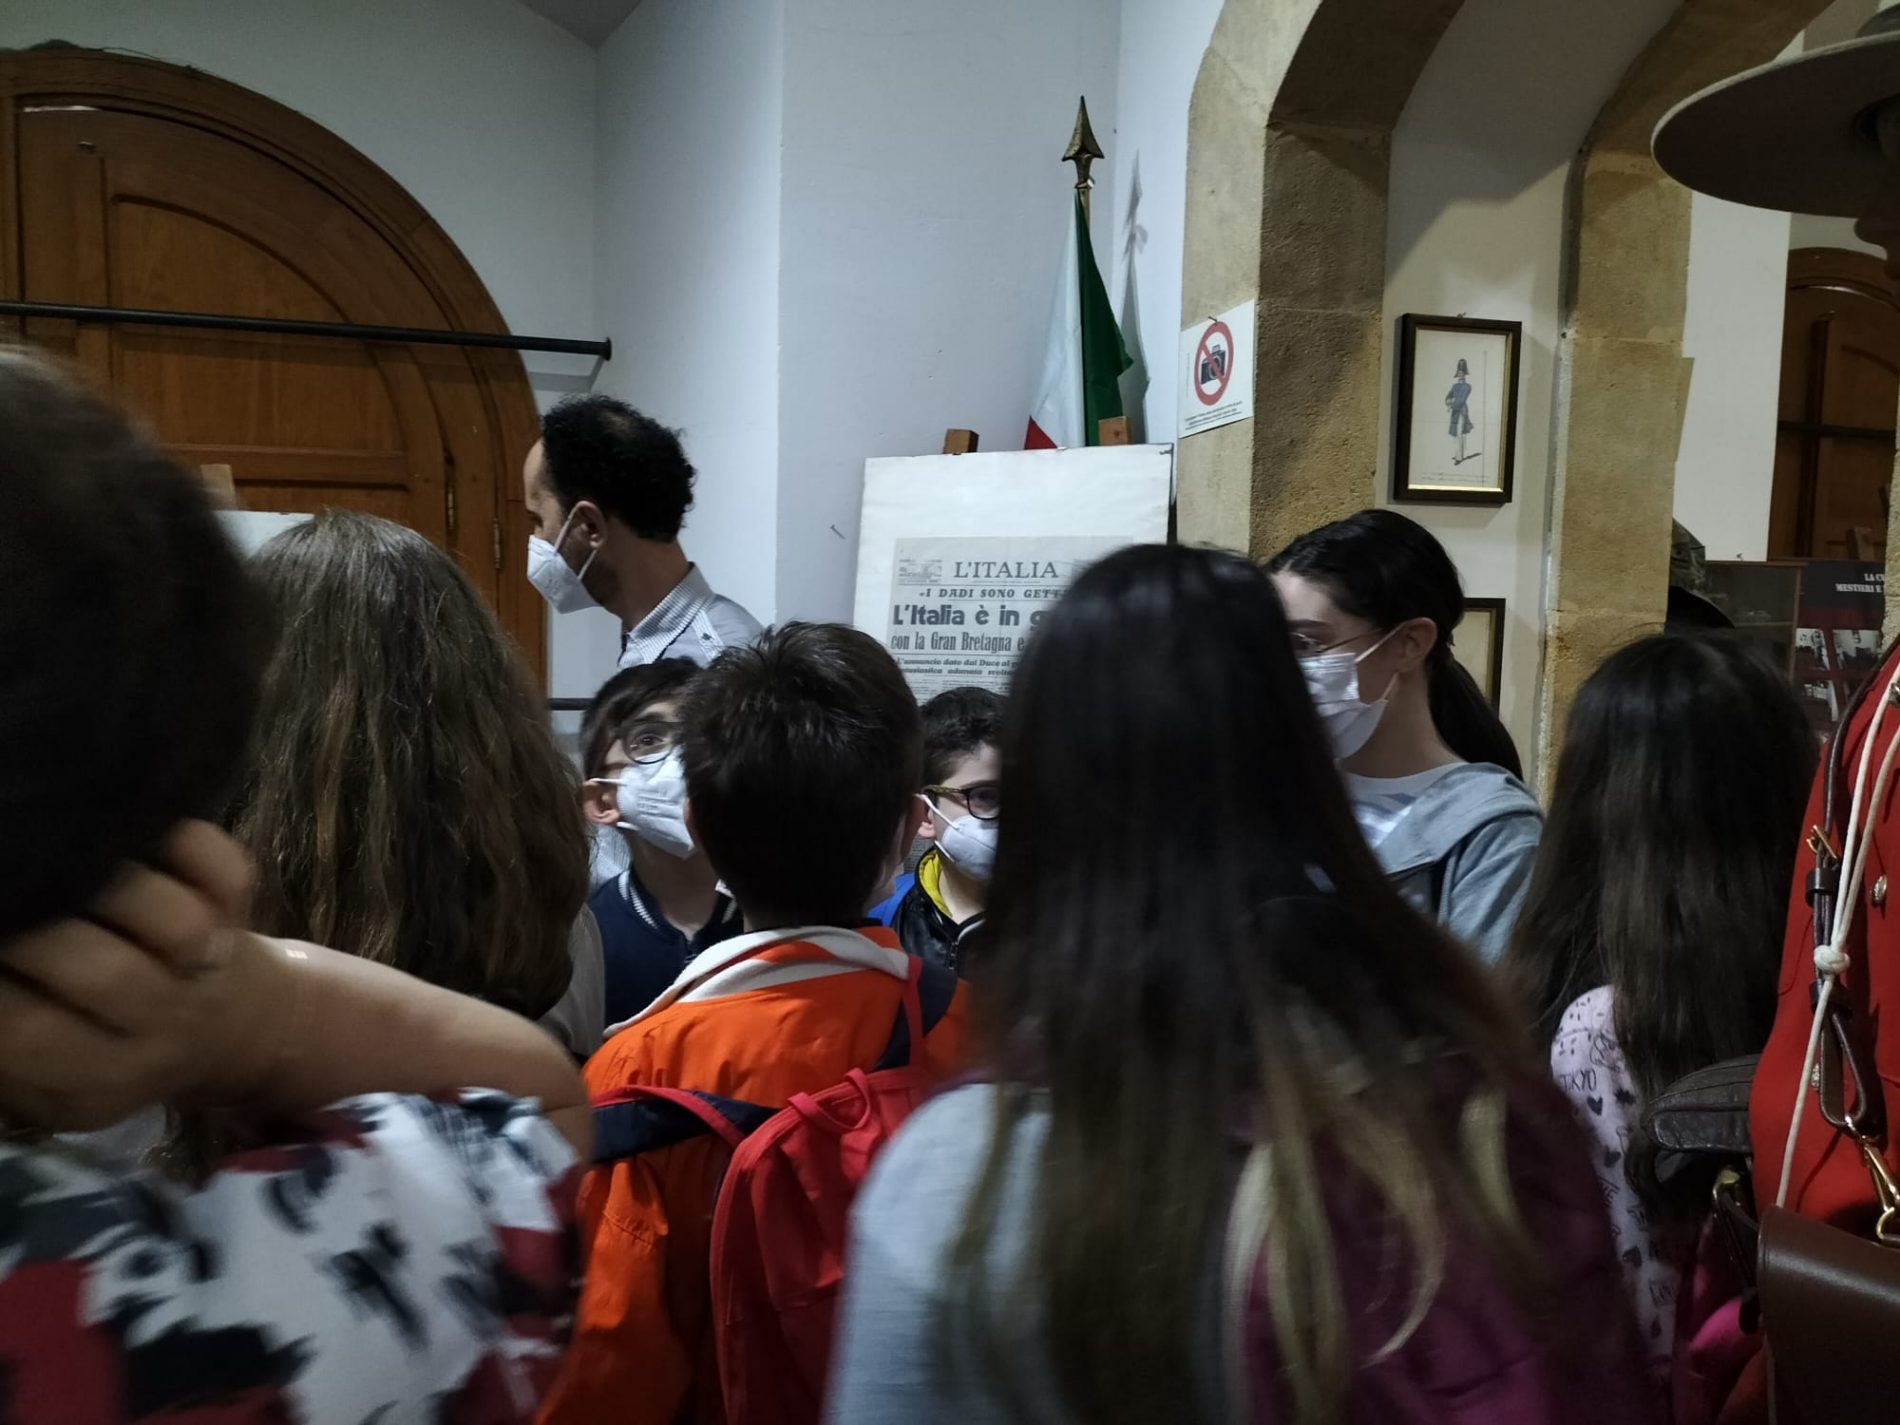 BARRAFRANCA. Gli alunni di 5ª D del plesso “Leonardo Sciascia” “Alla scoperta di Barrafranca”.